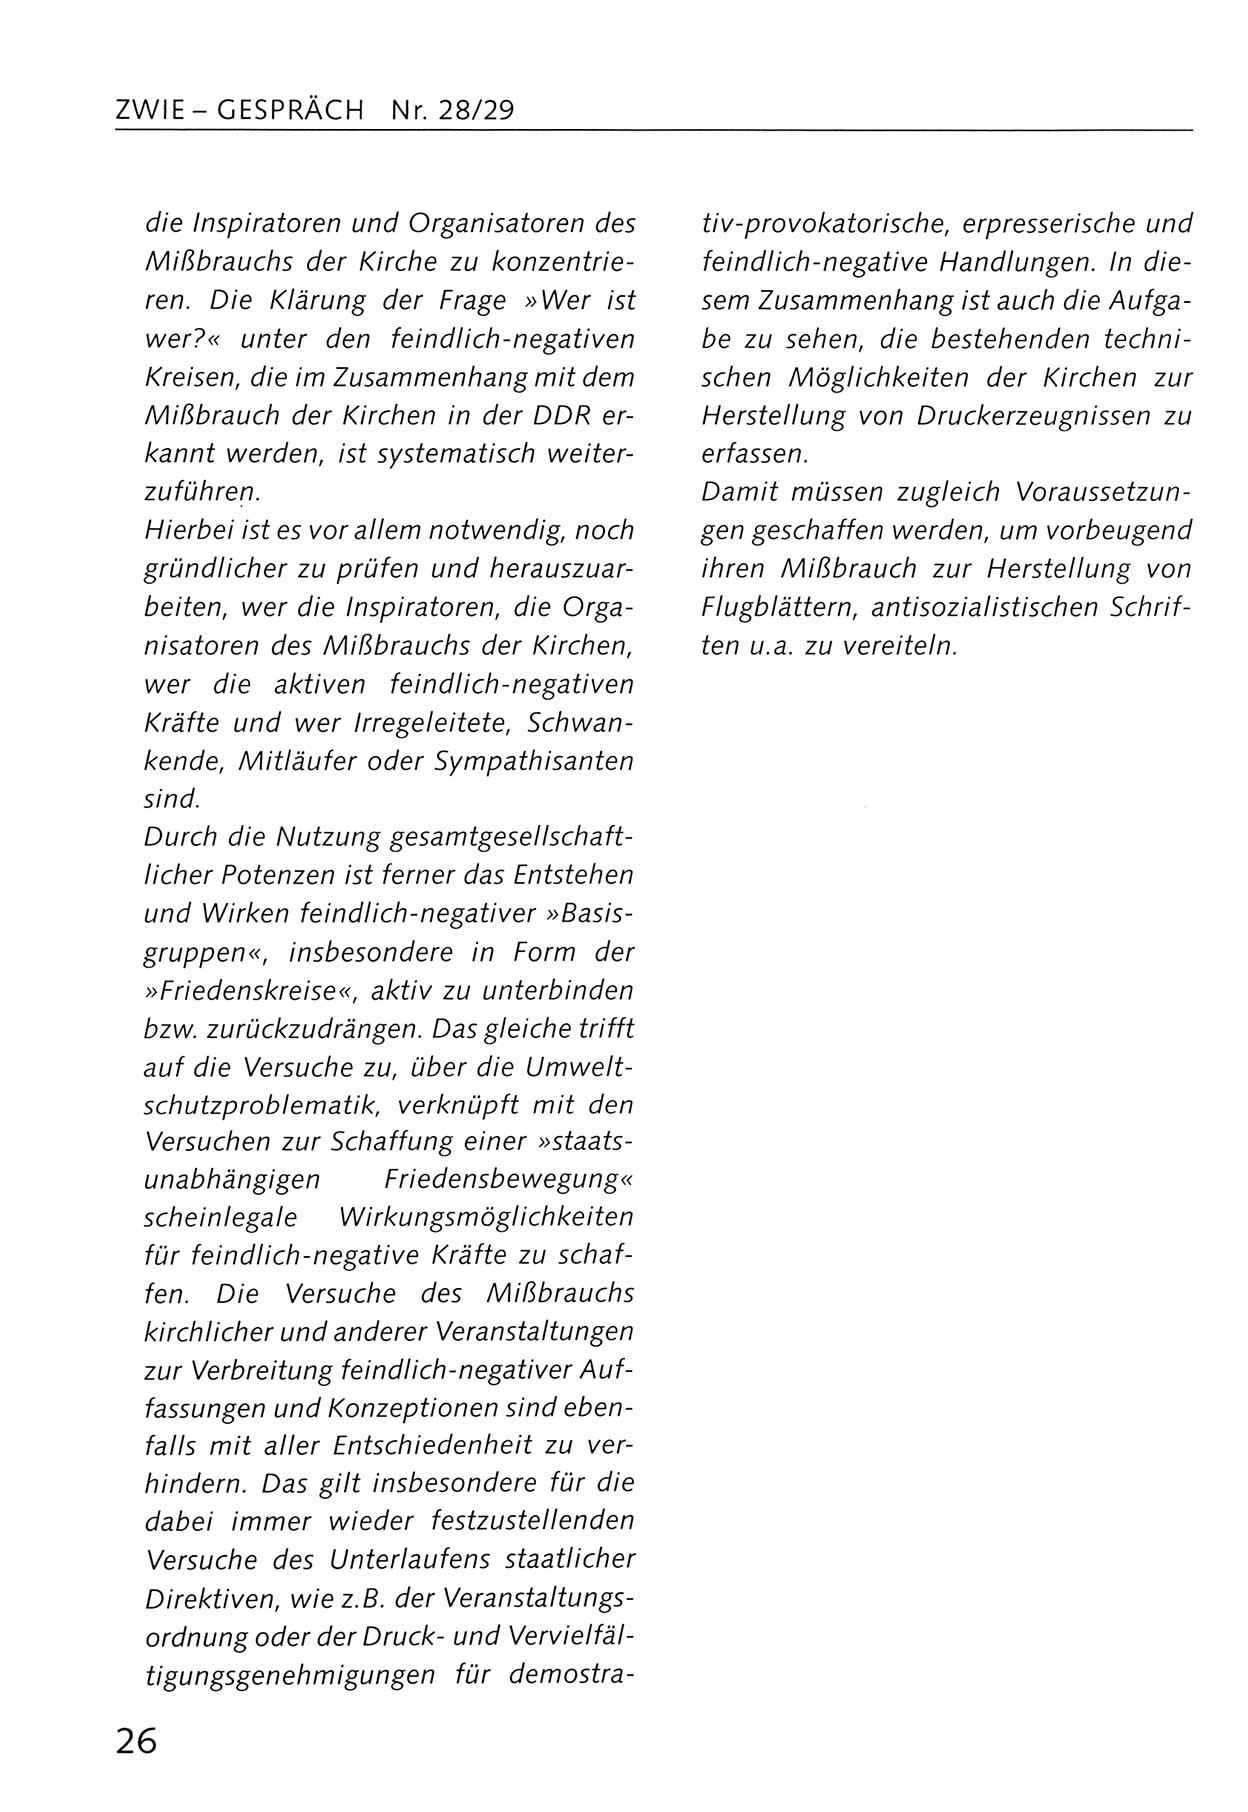 Zwie-Gespräch, Beiträge zum Umgang mit der Staatssicherheits-Vergangenheit [Deutsche Demokratische Republik (DDR)], Ausgabe Nr. 28/29, Berlin 1995, Seite 26 (Zwie-Gespr. Ausg. 28/29 1995, S. 26)